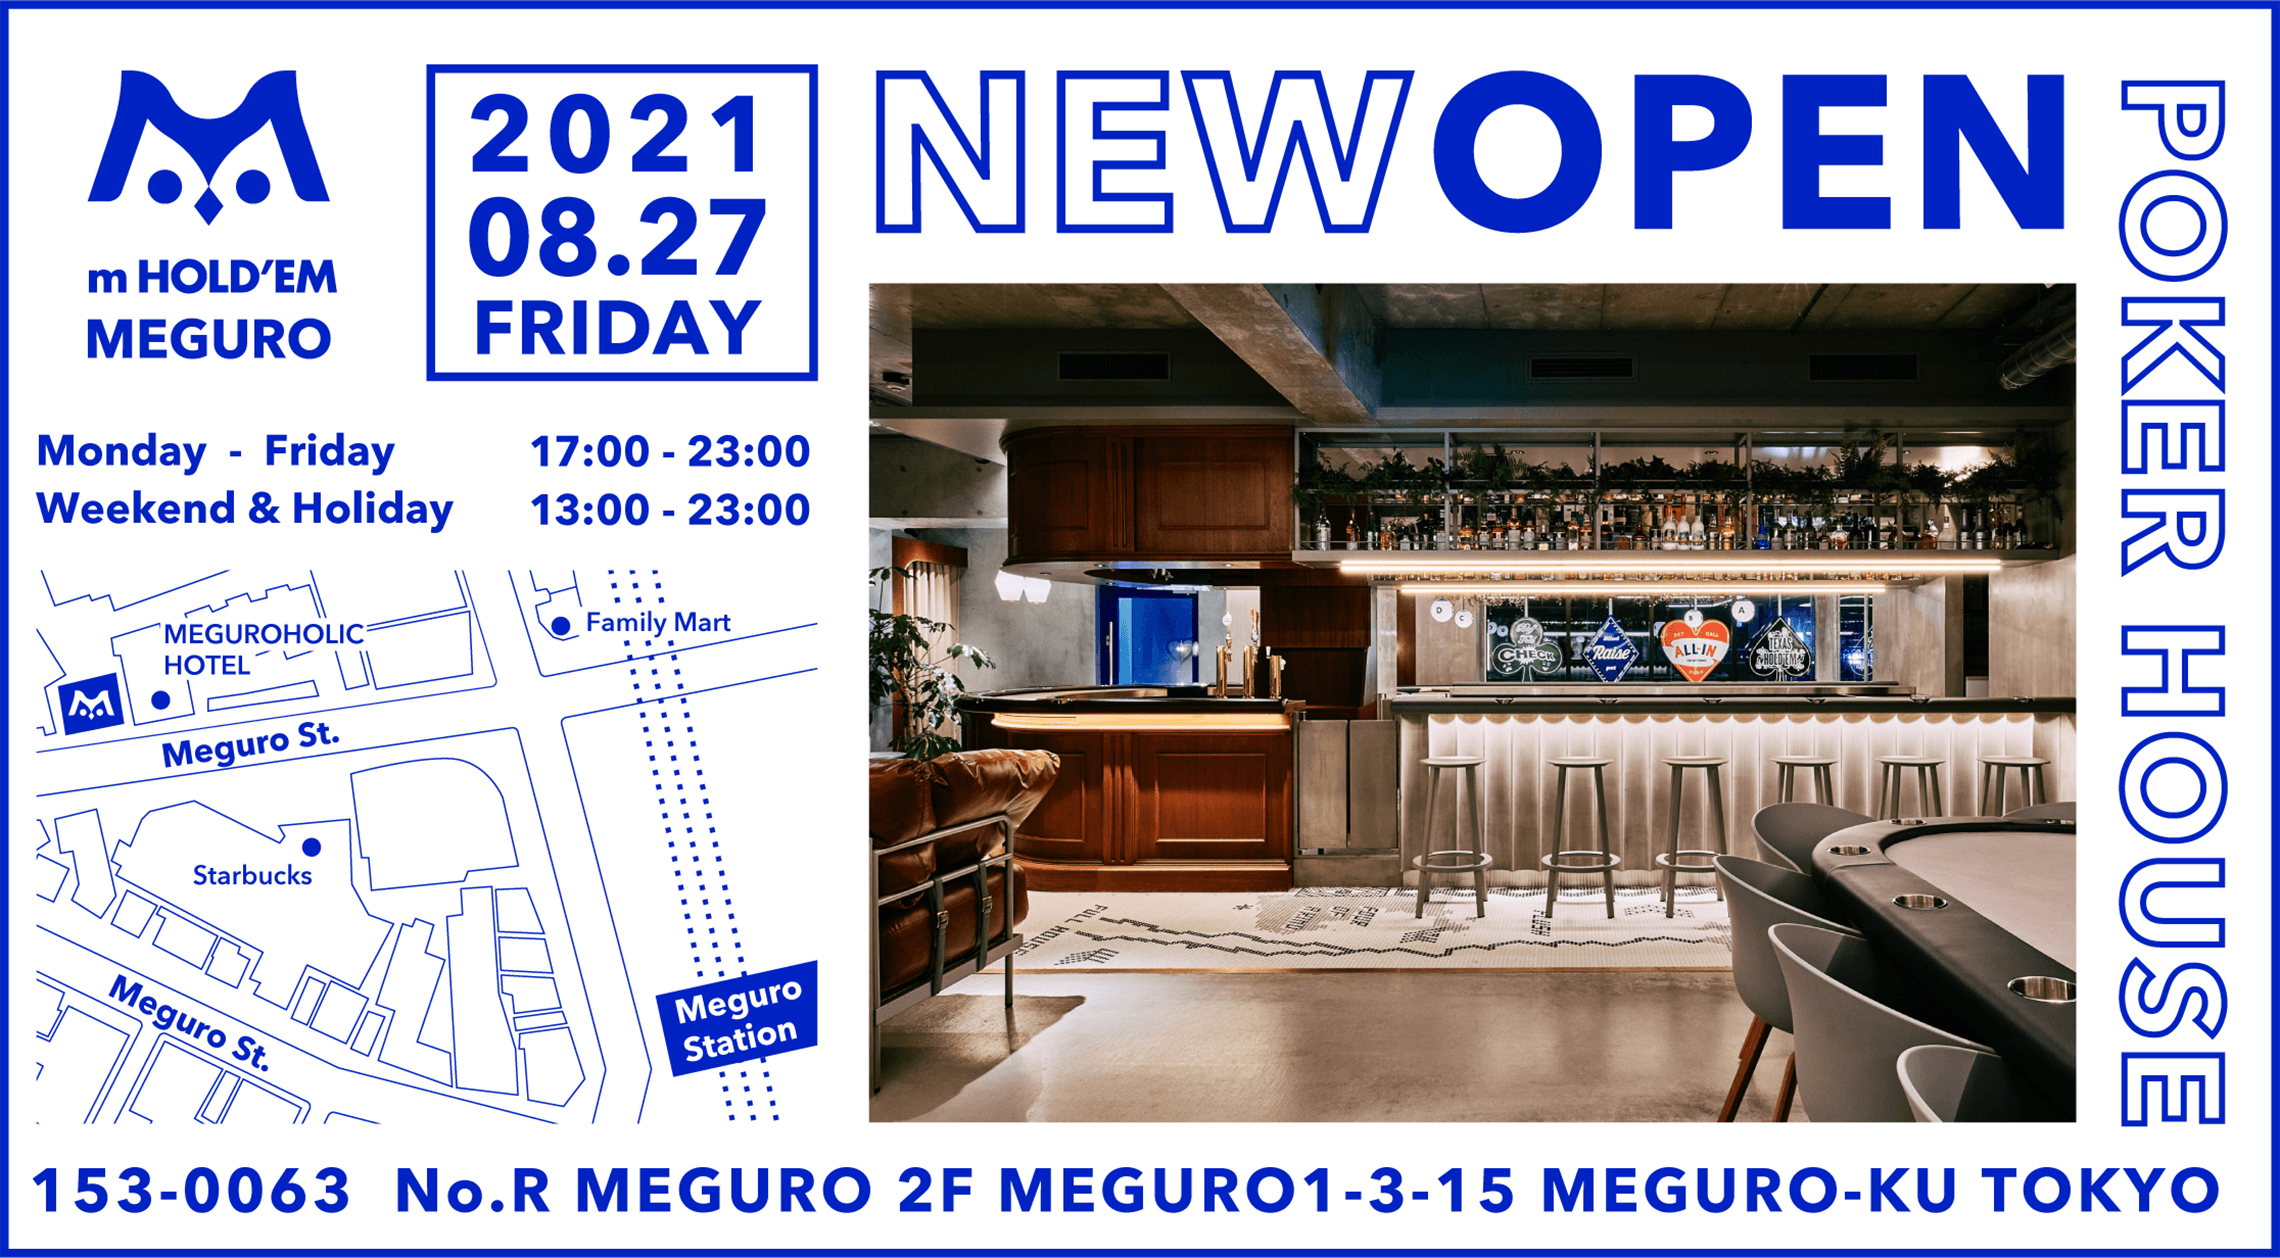 画像:m HOLD'EM MEGURO 2021.08.27 FRYDAY NEW OPEN